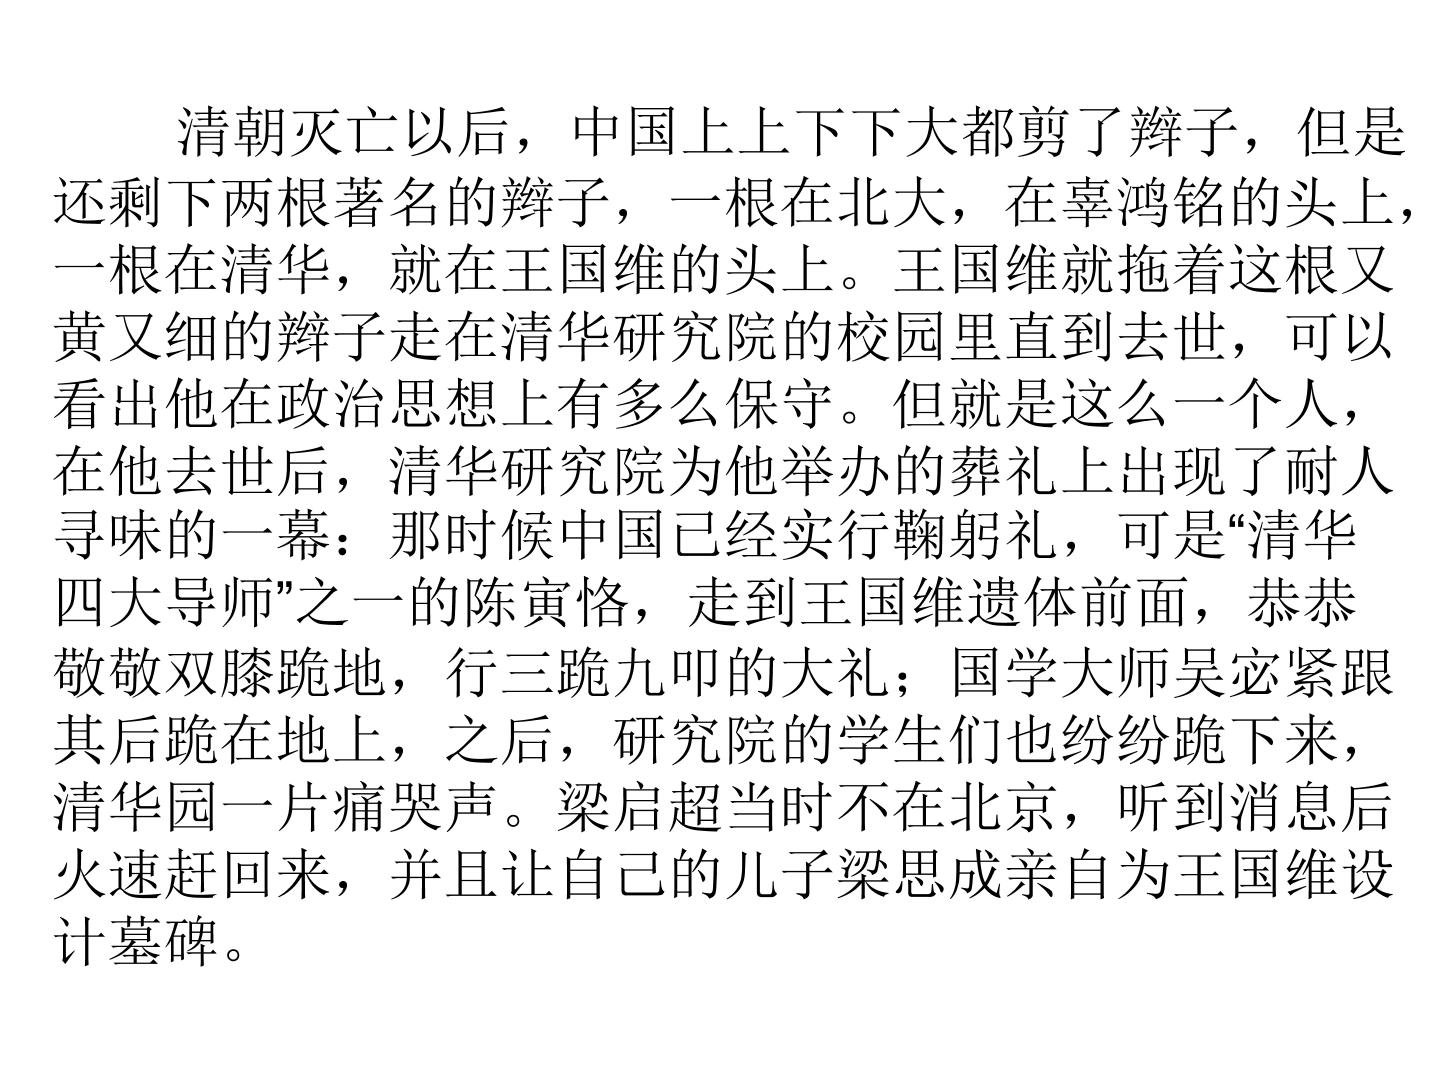 人教版高中语文-选修-- 中国文化经典研读10《人间词话》十则》课件